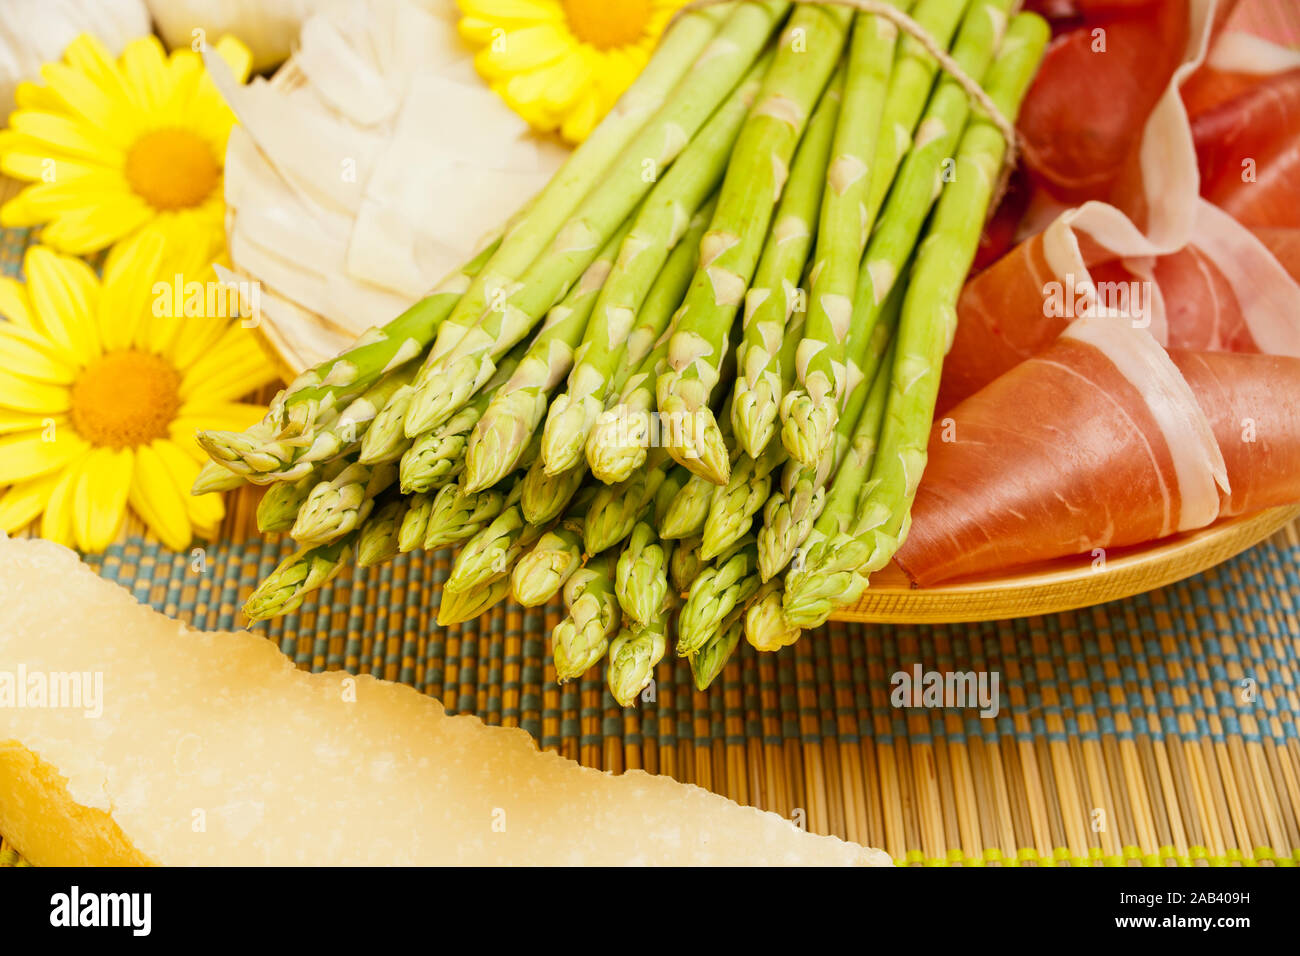 Grüner Spargel in einer Holzschale zusammen mit Schinken und Parmesan |asparago verde in una ciotola di legno con prosciutto e formaggio parmigiano| Foto Stock